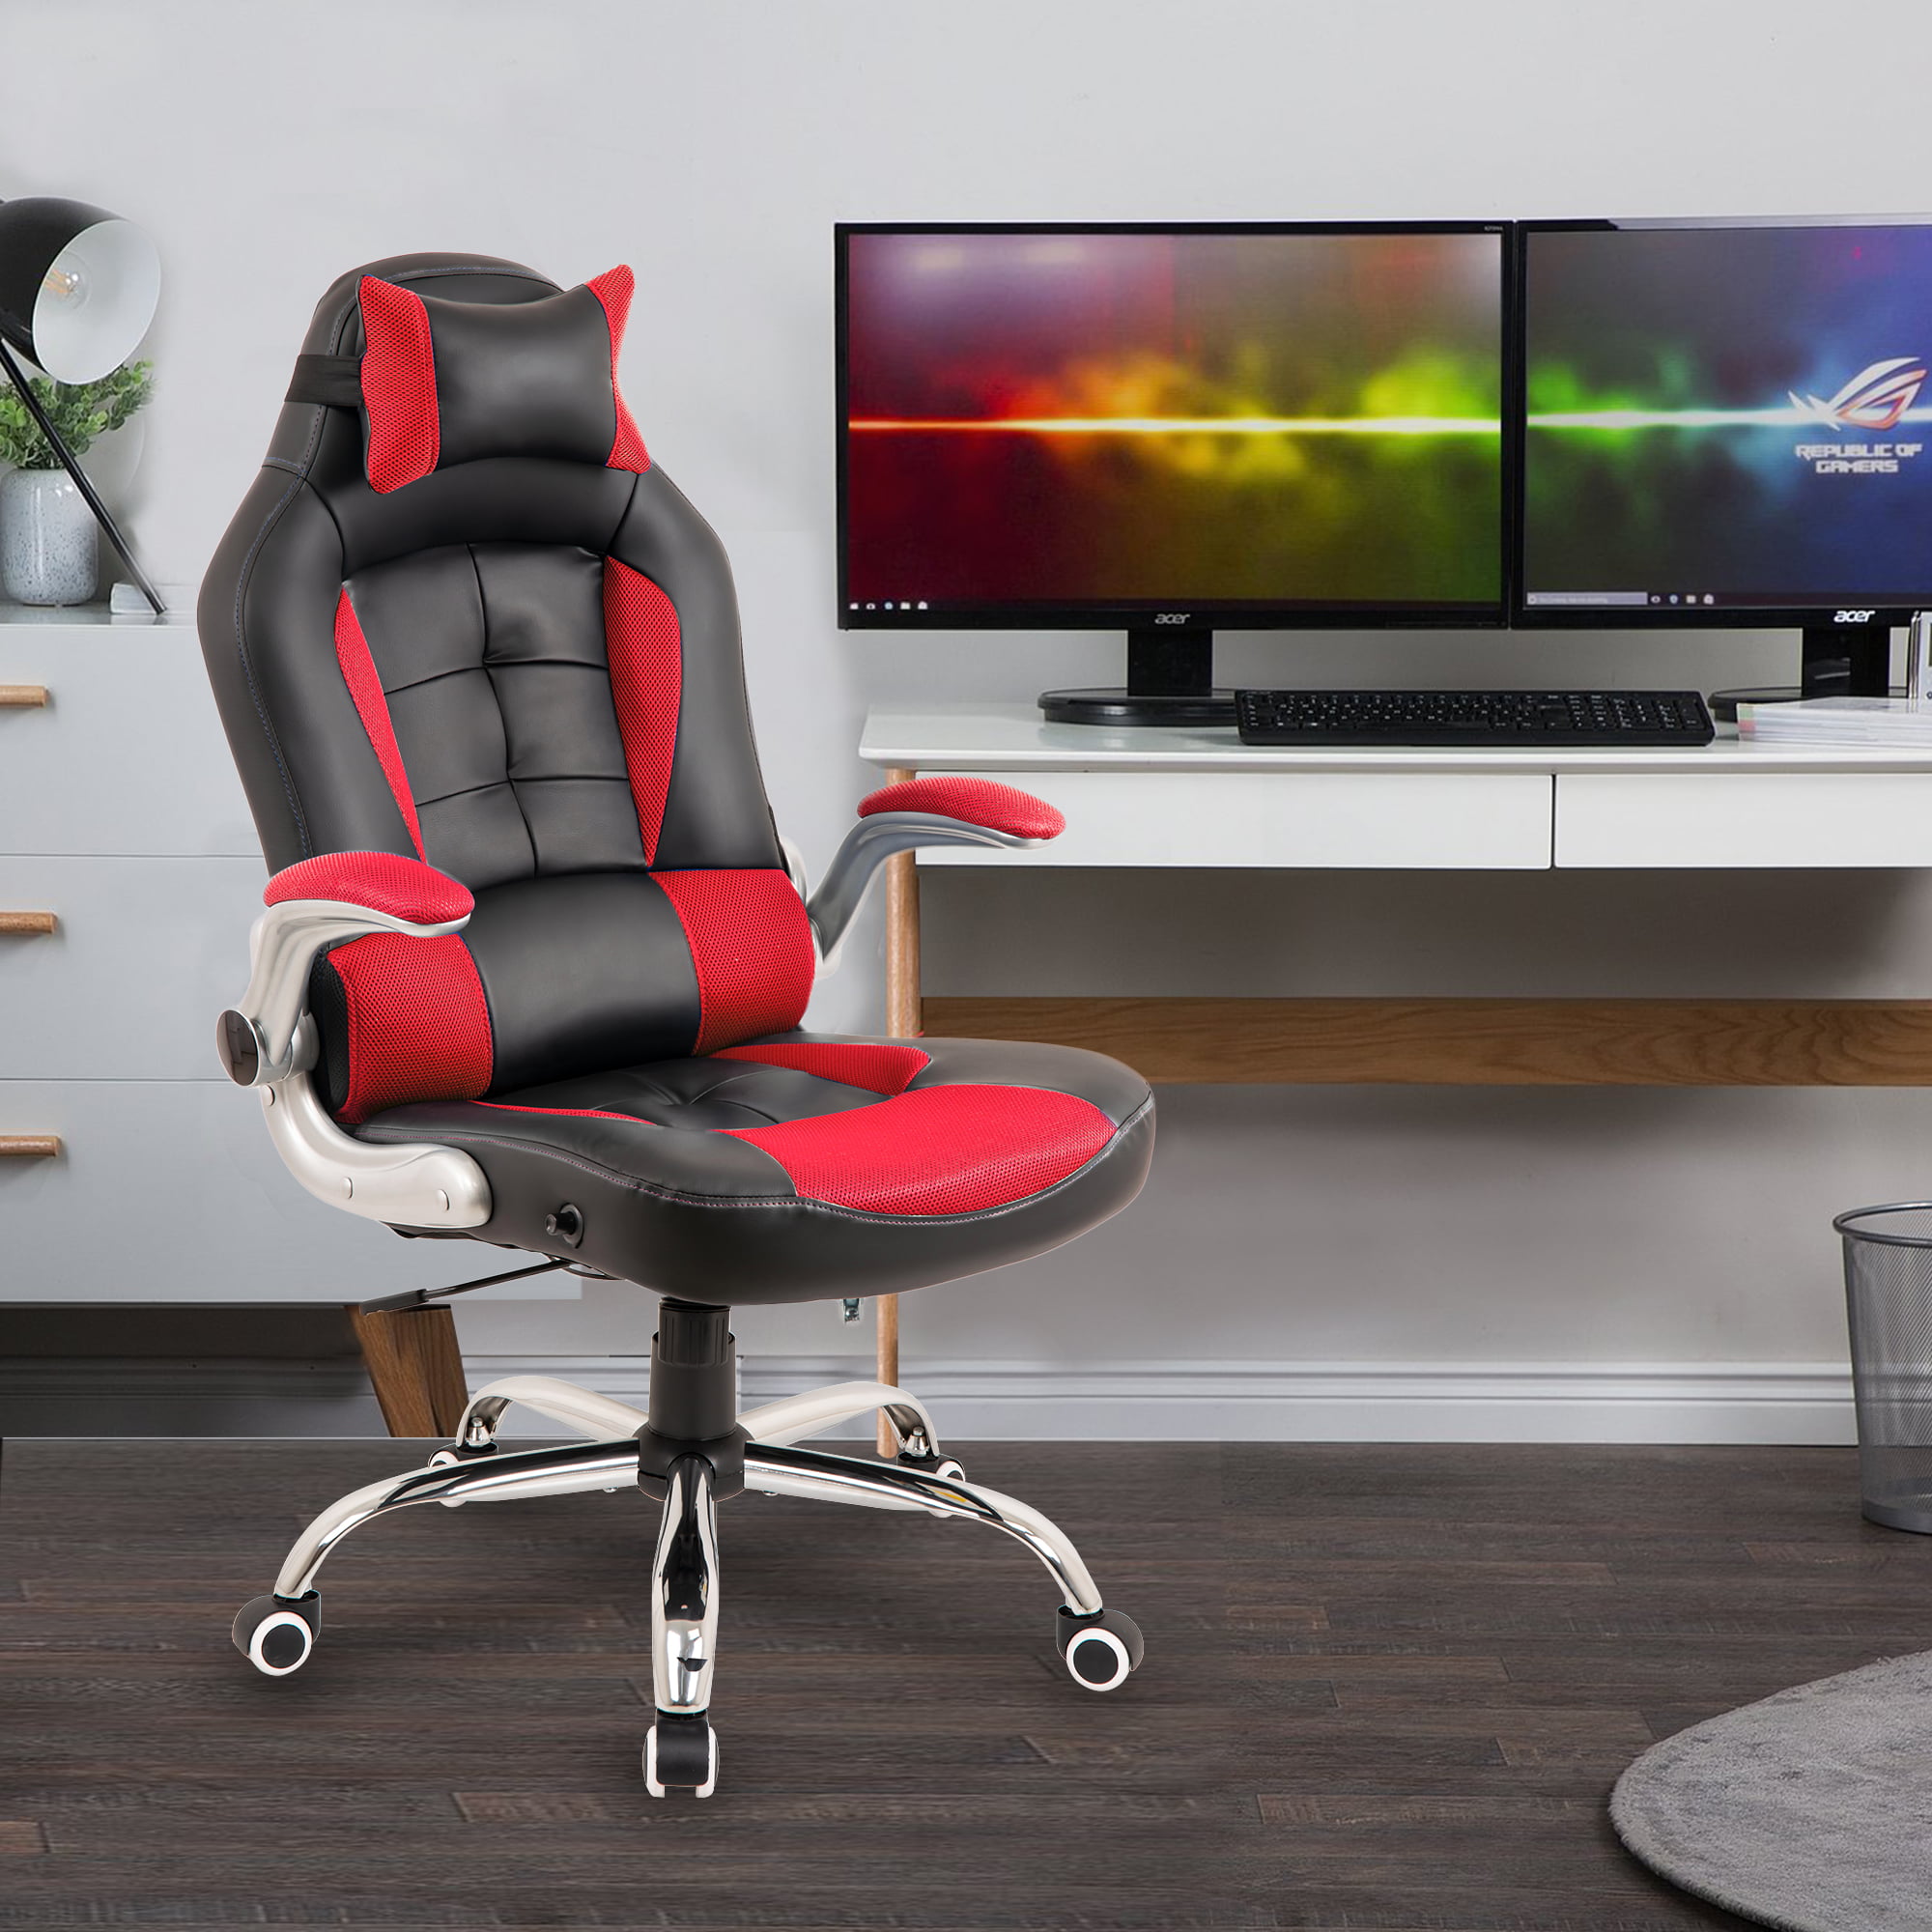 Merax Racing Style Gaming Chair Ergonomic HighBack